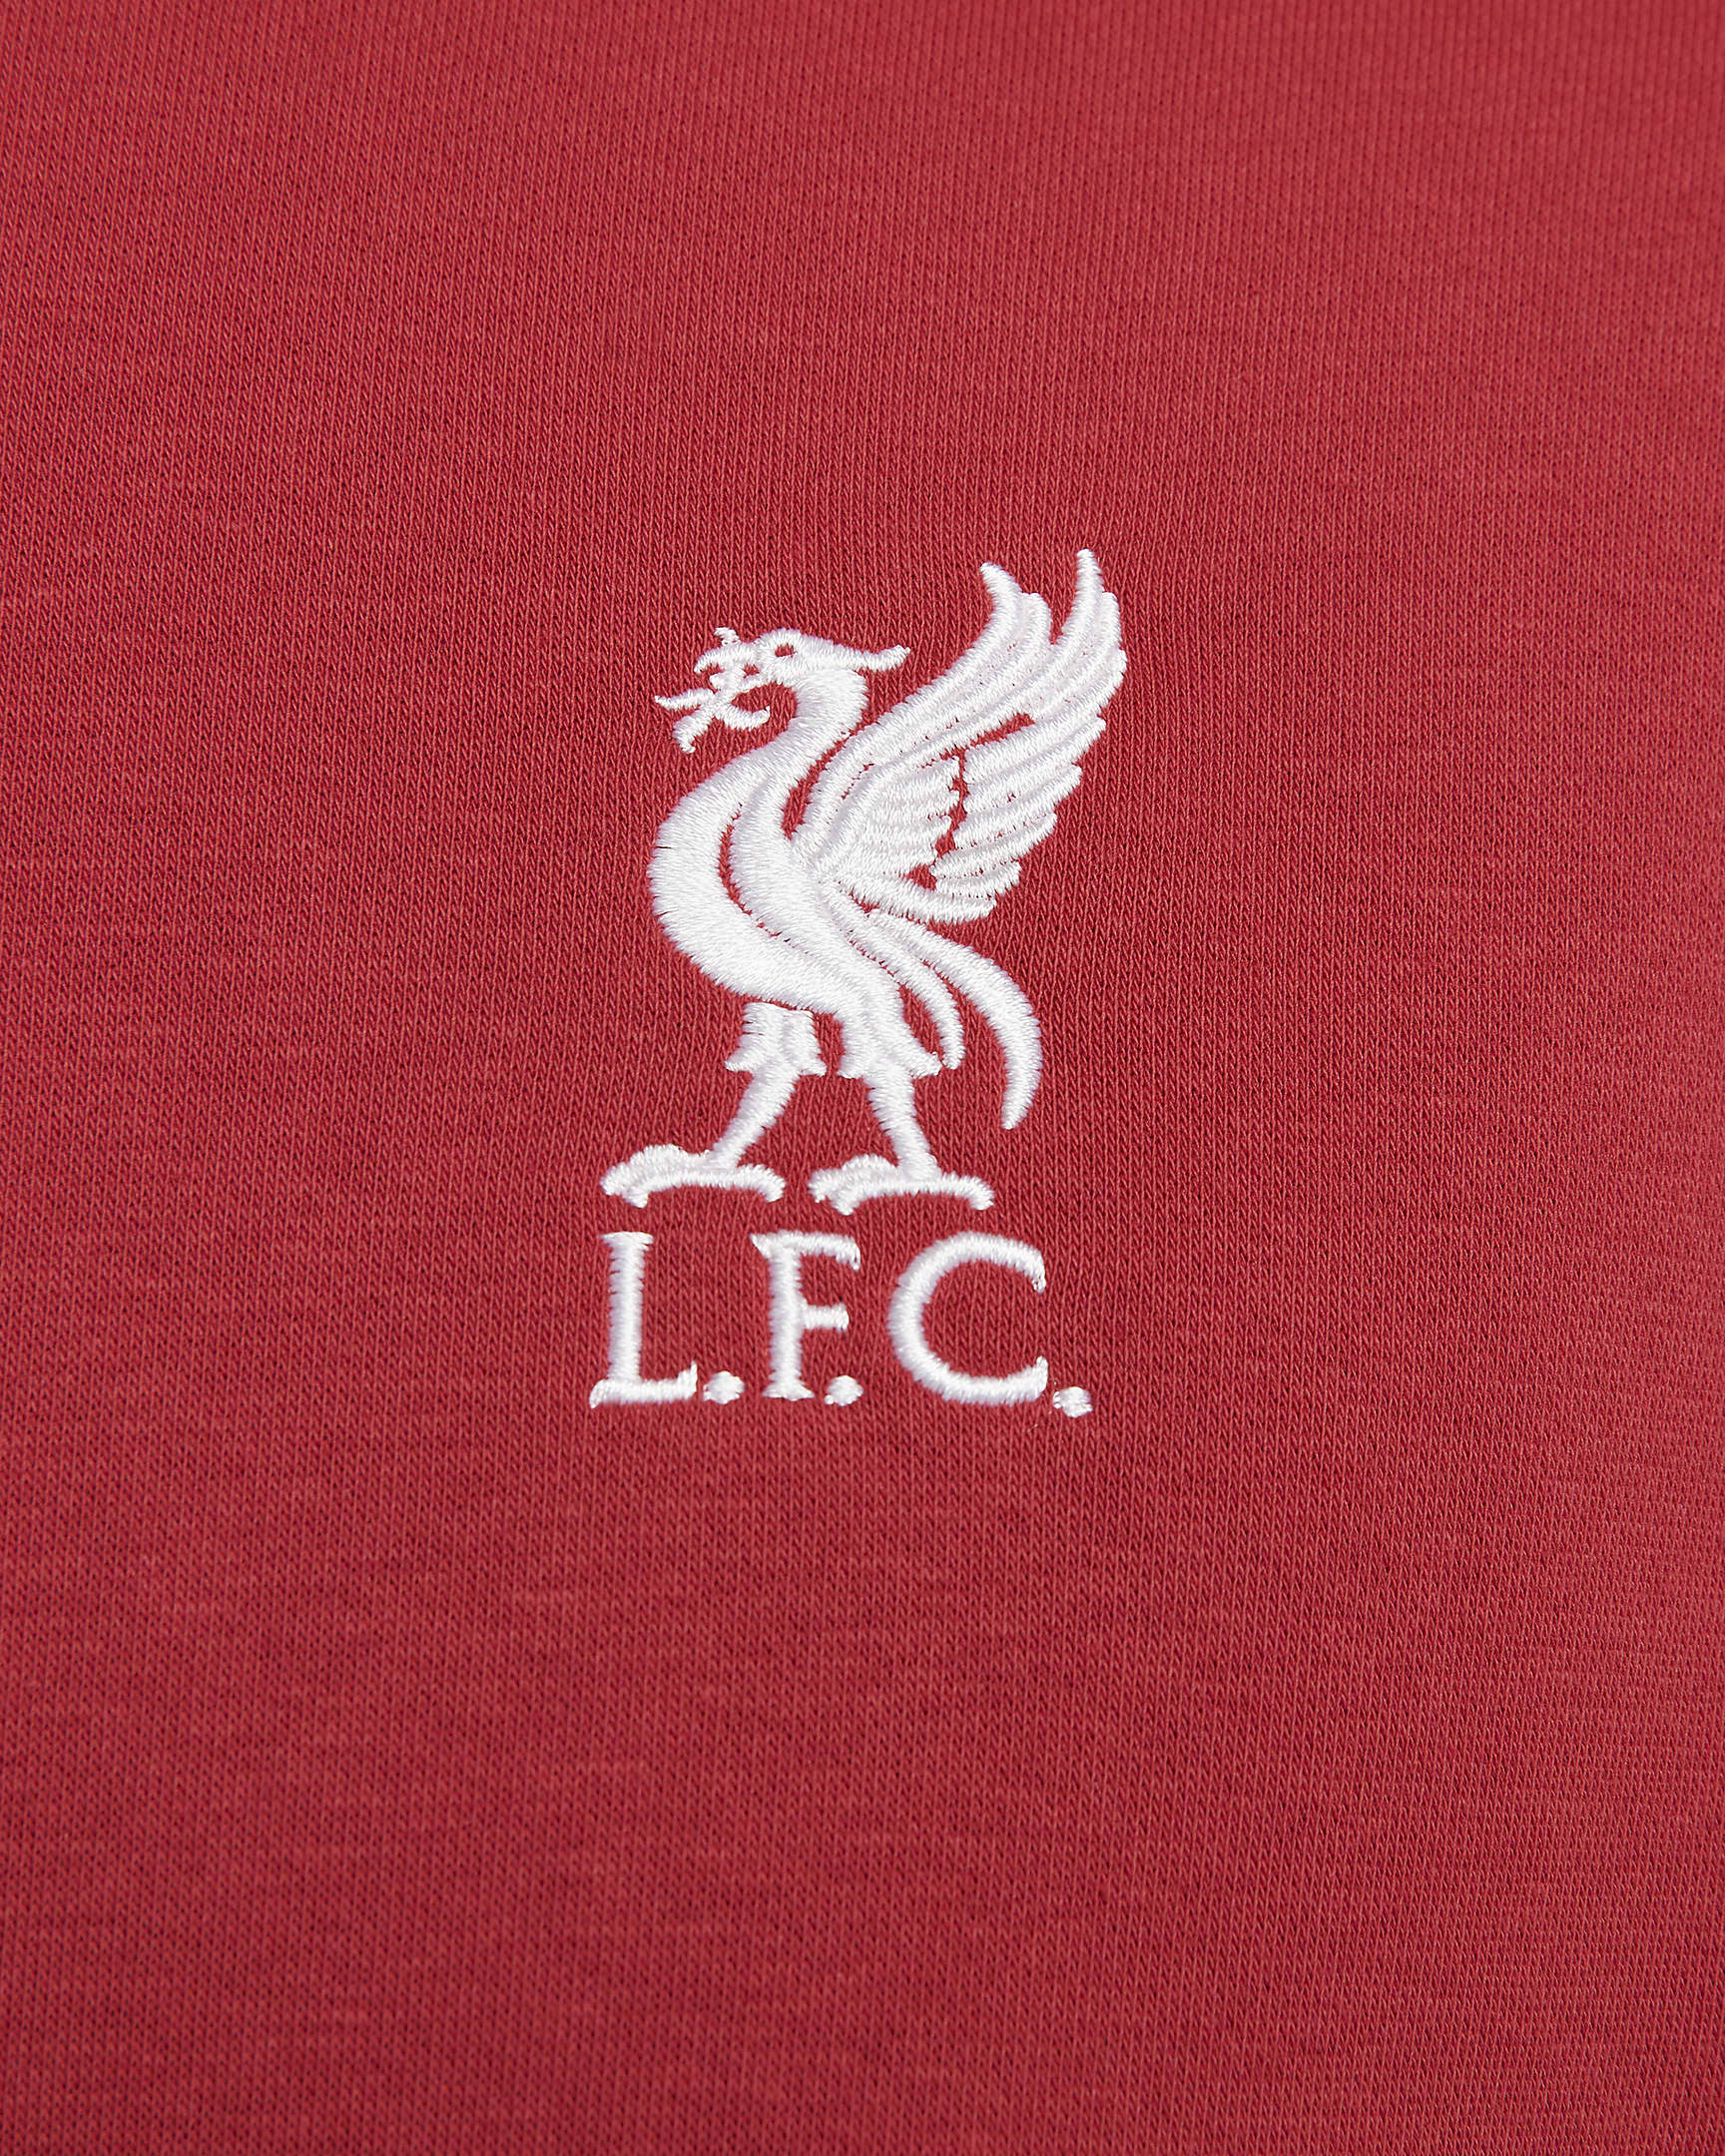 Liverpool FC Club Fleece Men's Crew-Neck Sweatshirt. Nike.com